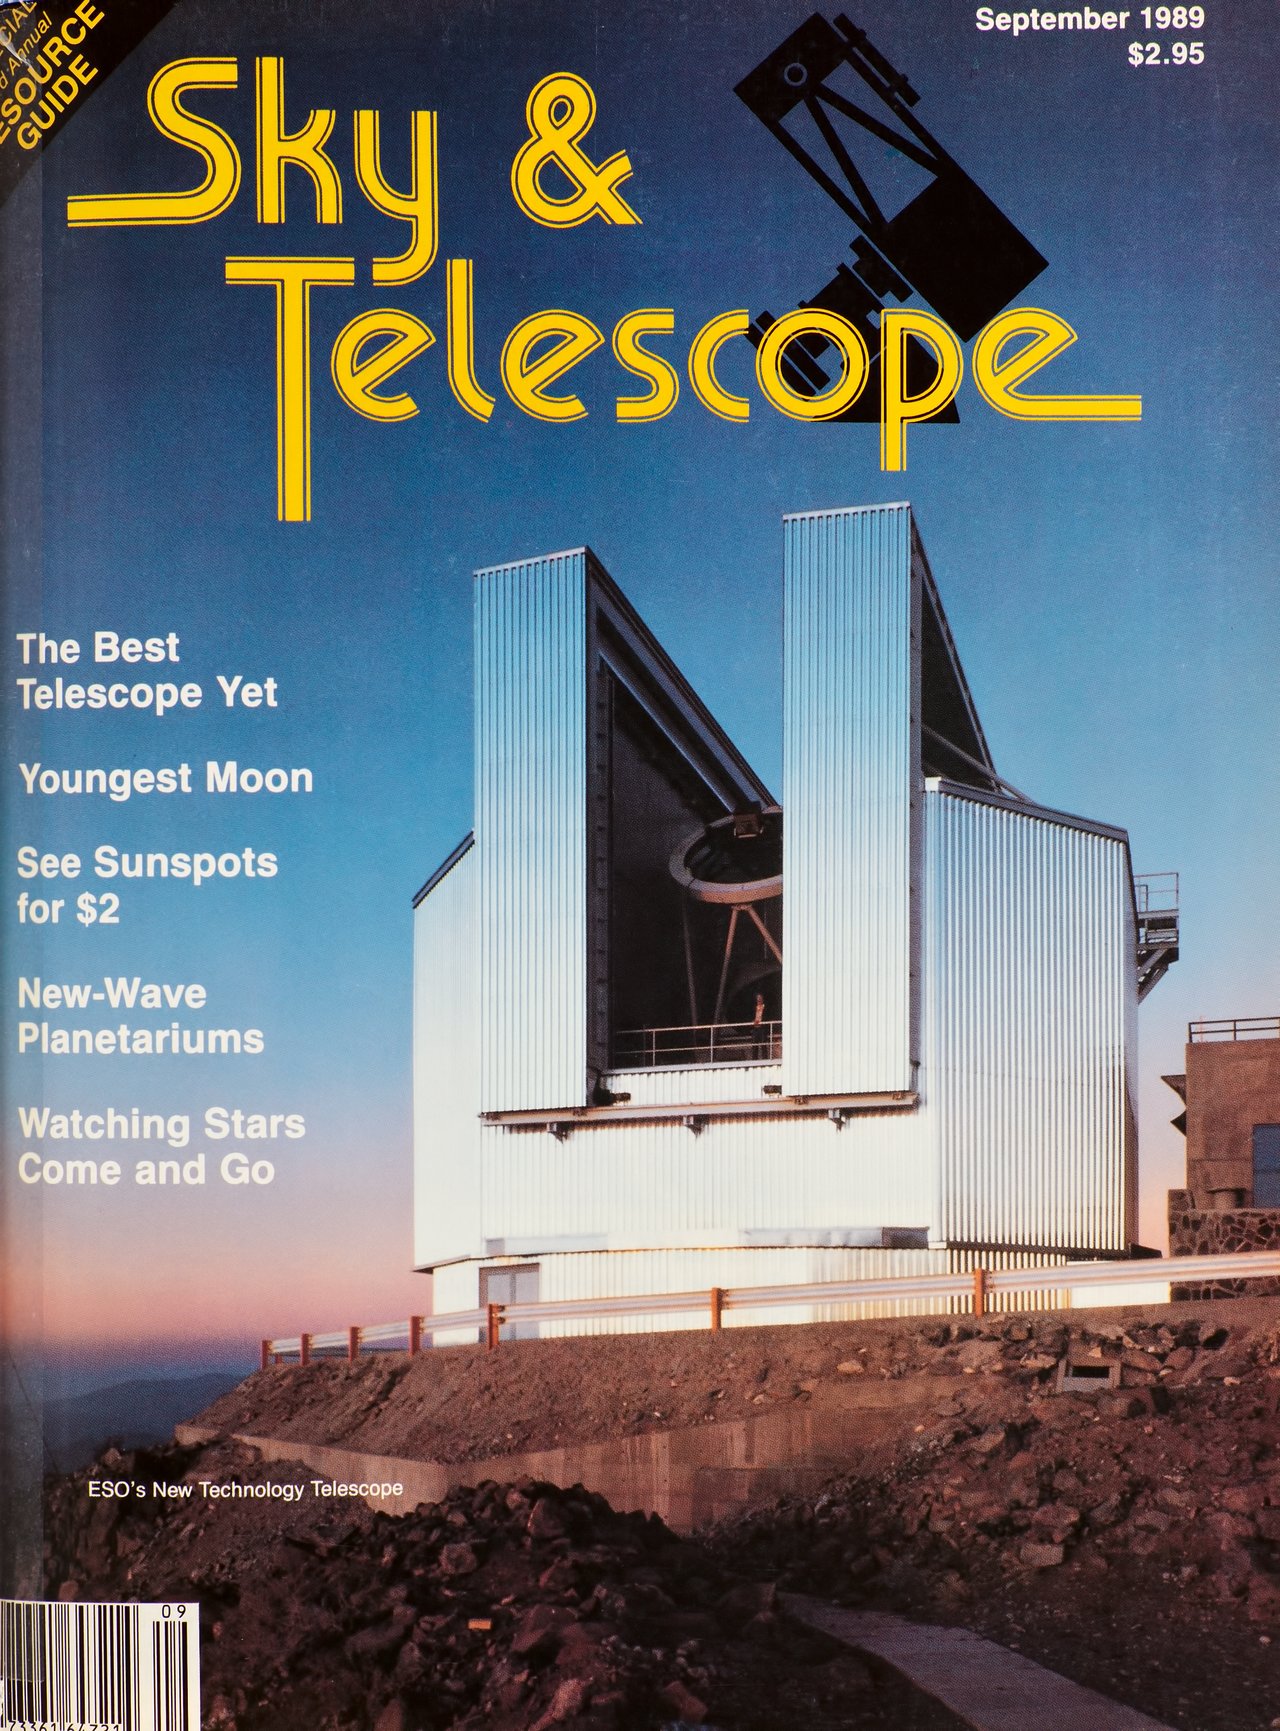 The NTT, cover of the Sky & Telescope Magazine in September 1989